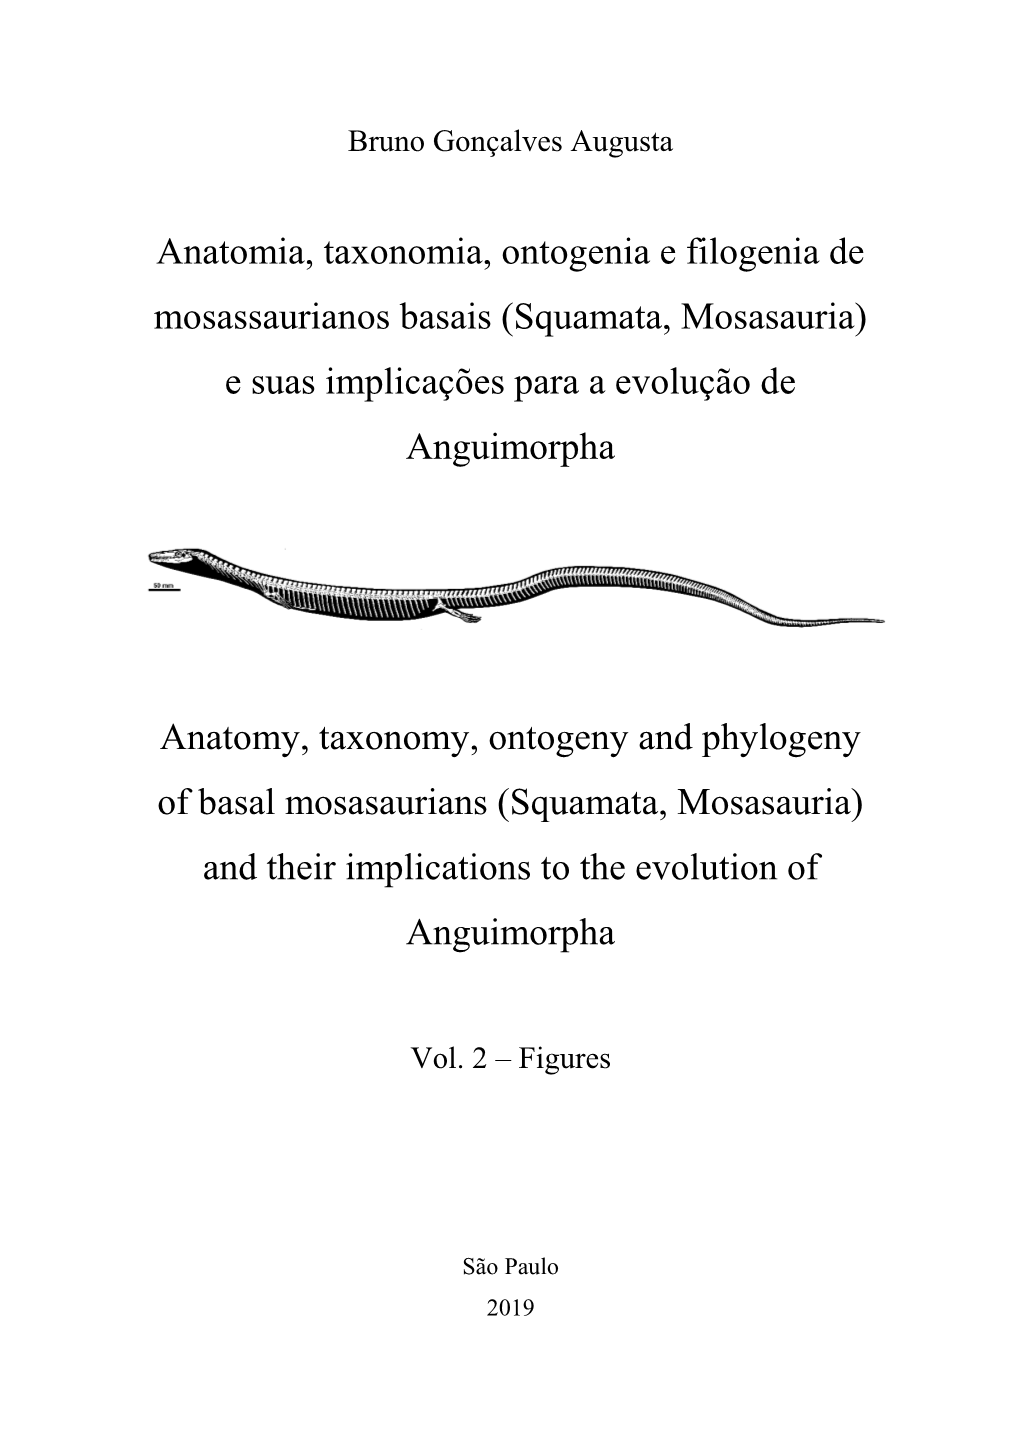 Anatomia, Taxonomia, Ontogenia E Filogenia De Mosassaurianos Basais (Squamata, Mosasauria) E Suas Implicações Para a Evolução De Anguimorpha